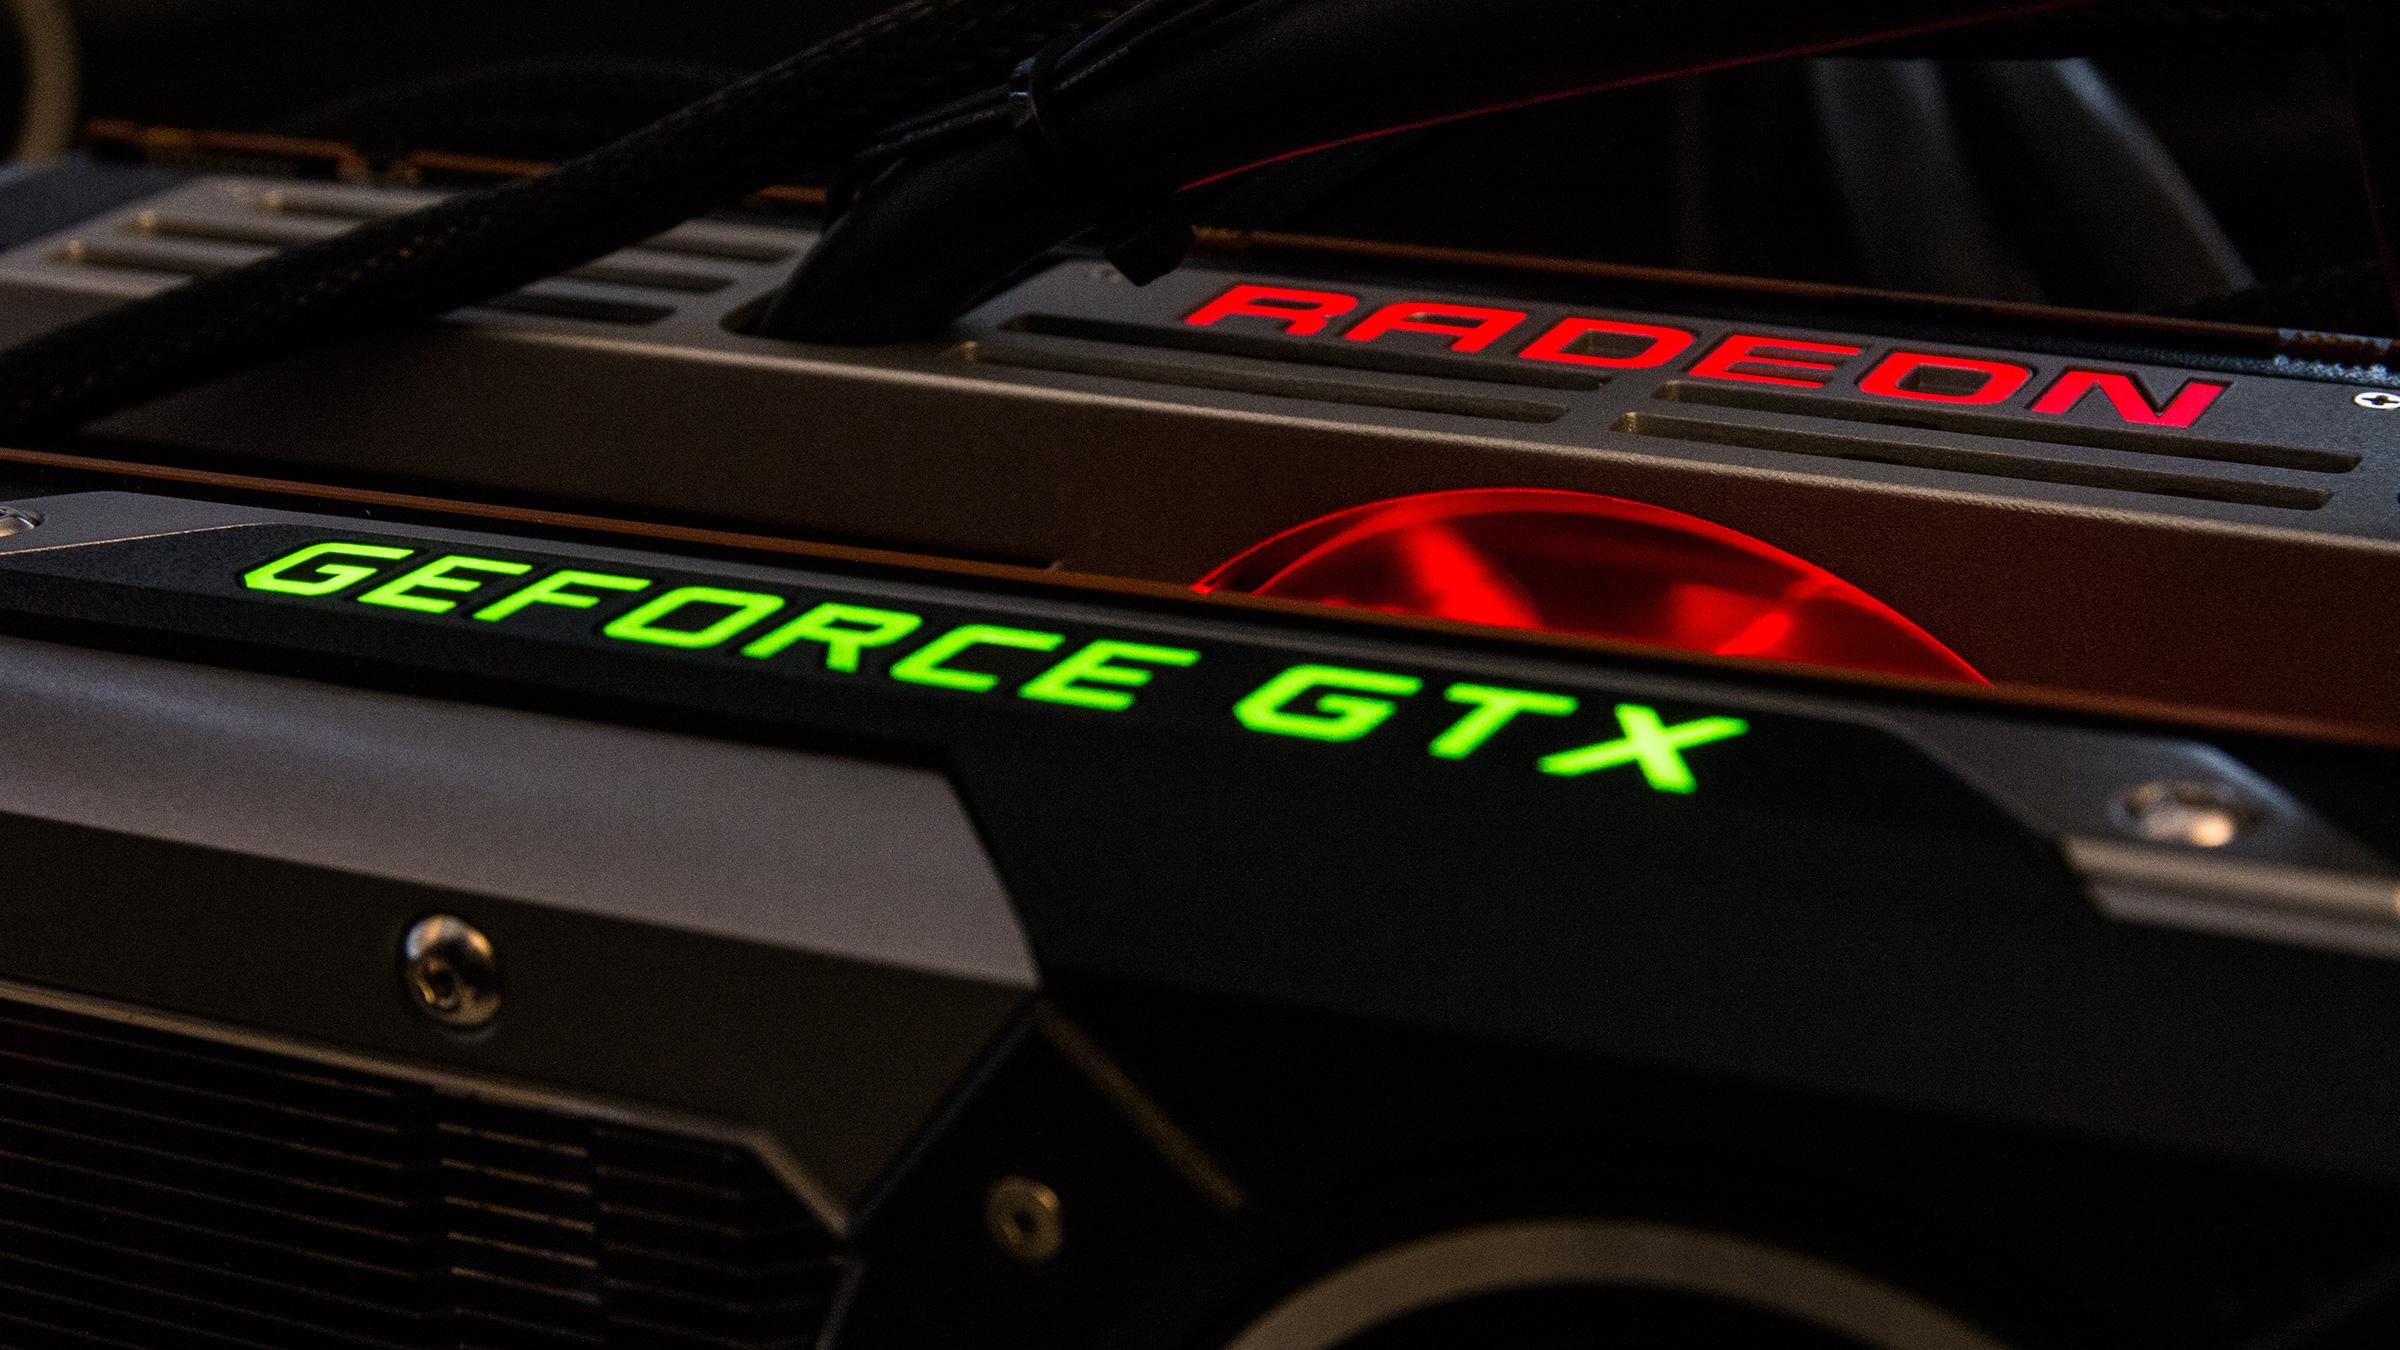 GeForce GTX 780 Ti SLI vs Radeon R9 295X2